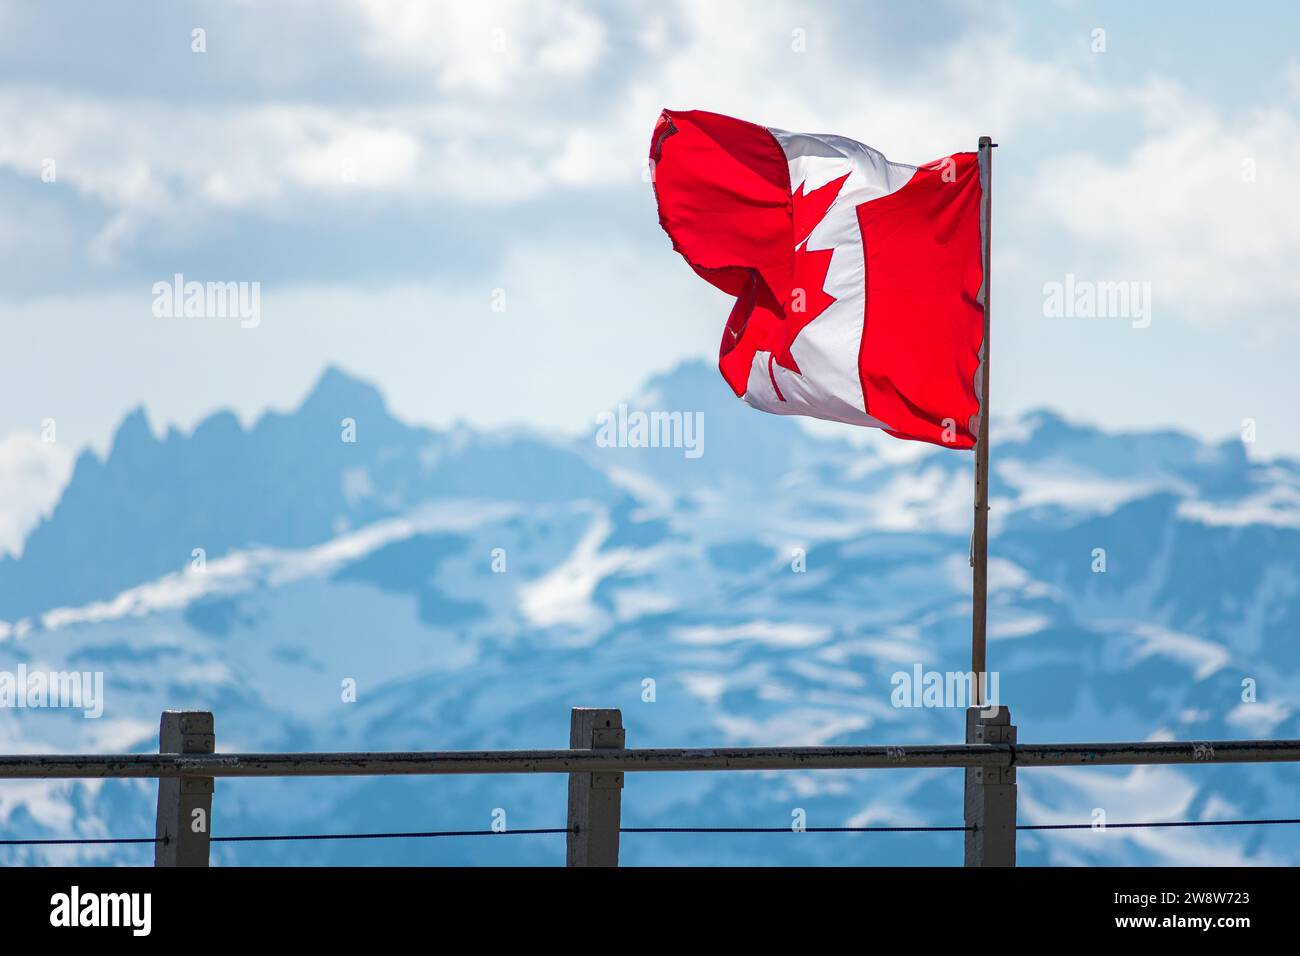 La bandiera canadese sventola con orgoglio sullo sfondo delle cime innevate del monte Whistler, a simboleggiare lo spirito di avventura nella Columbia Britannica. Foto Stock